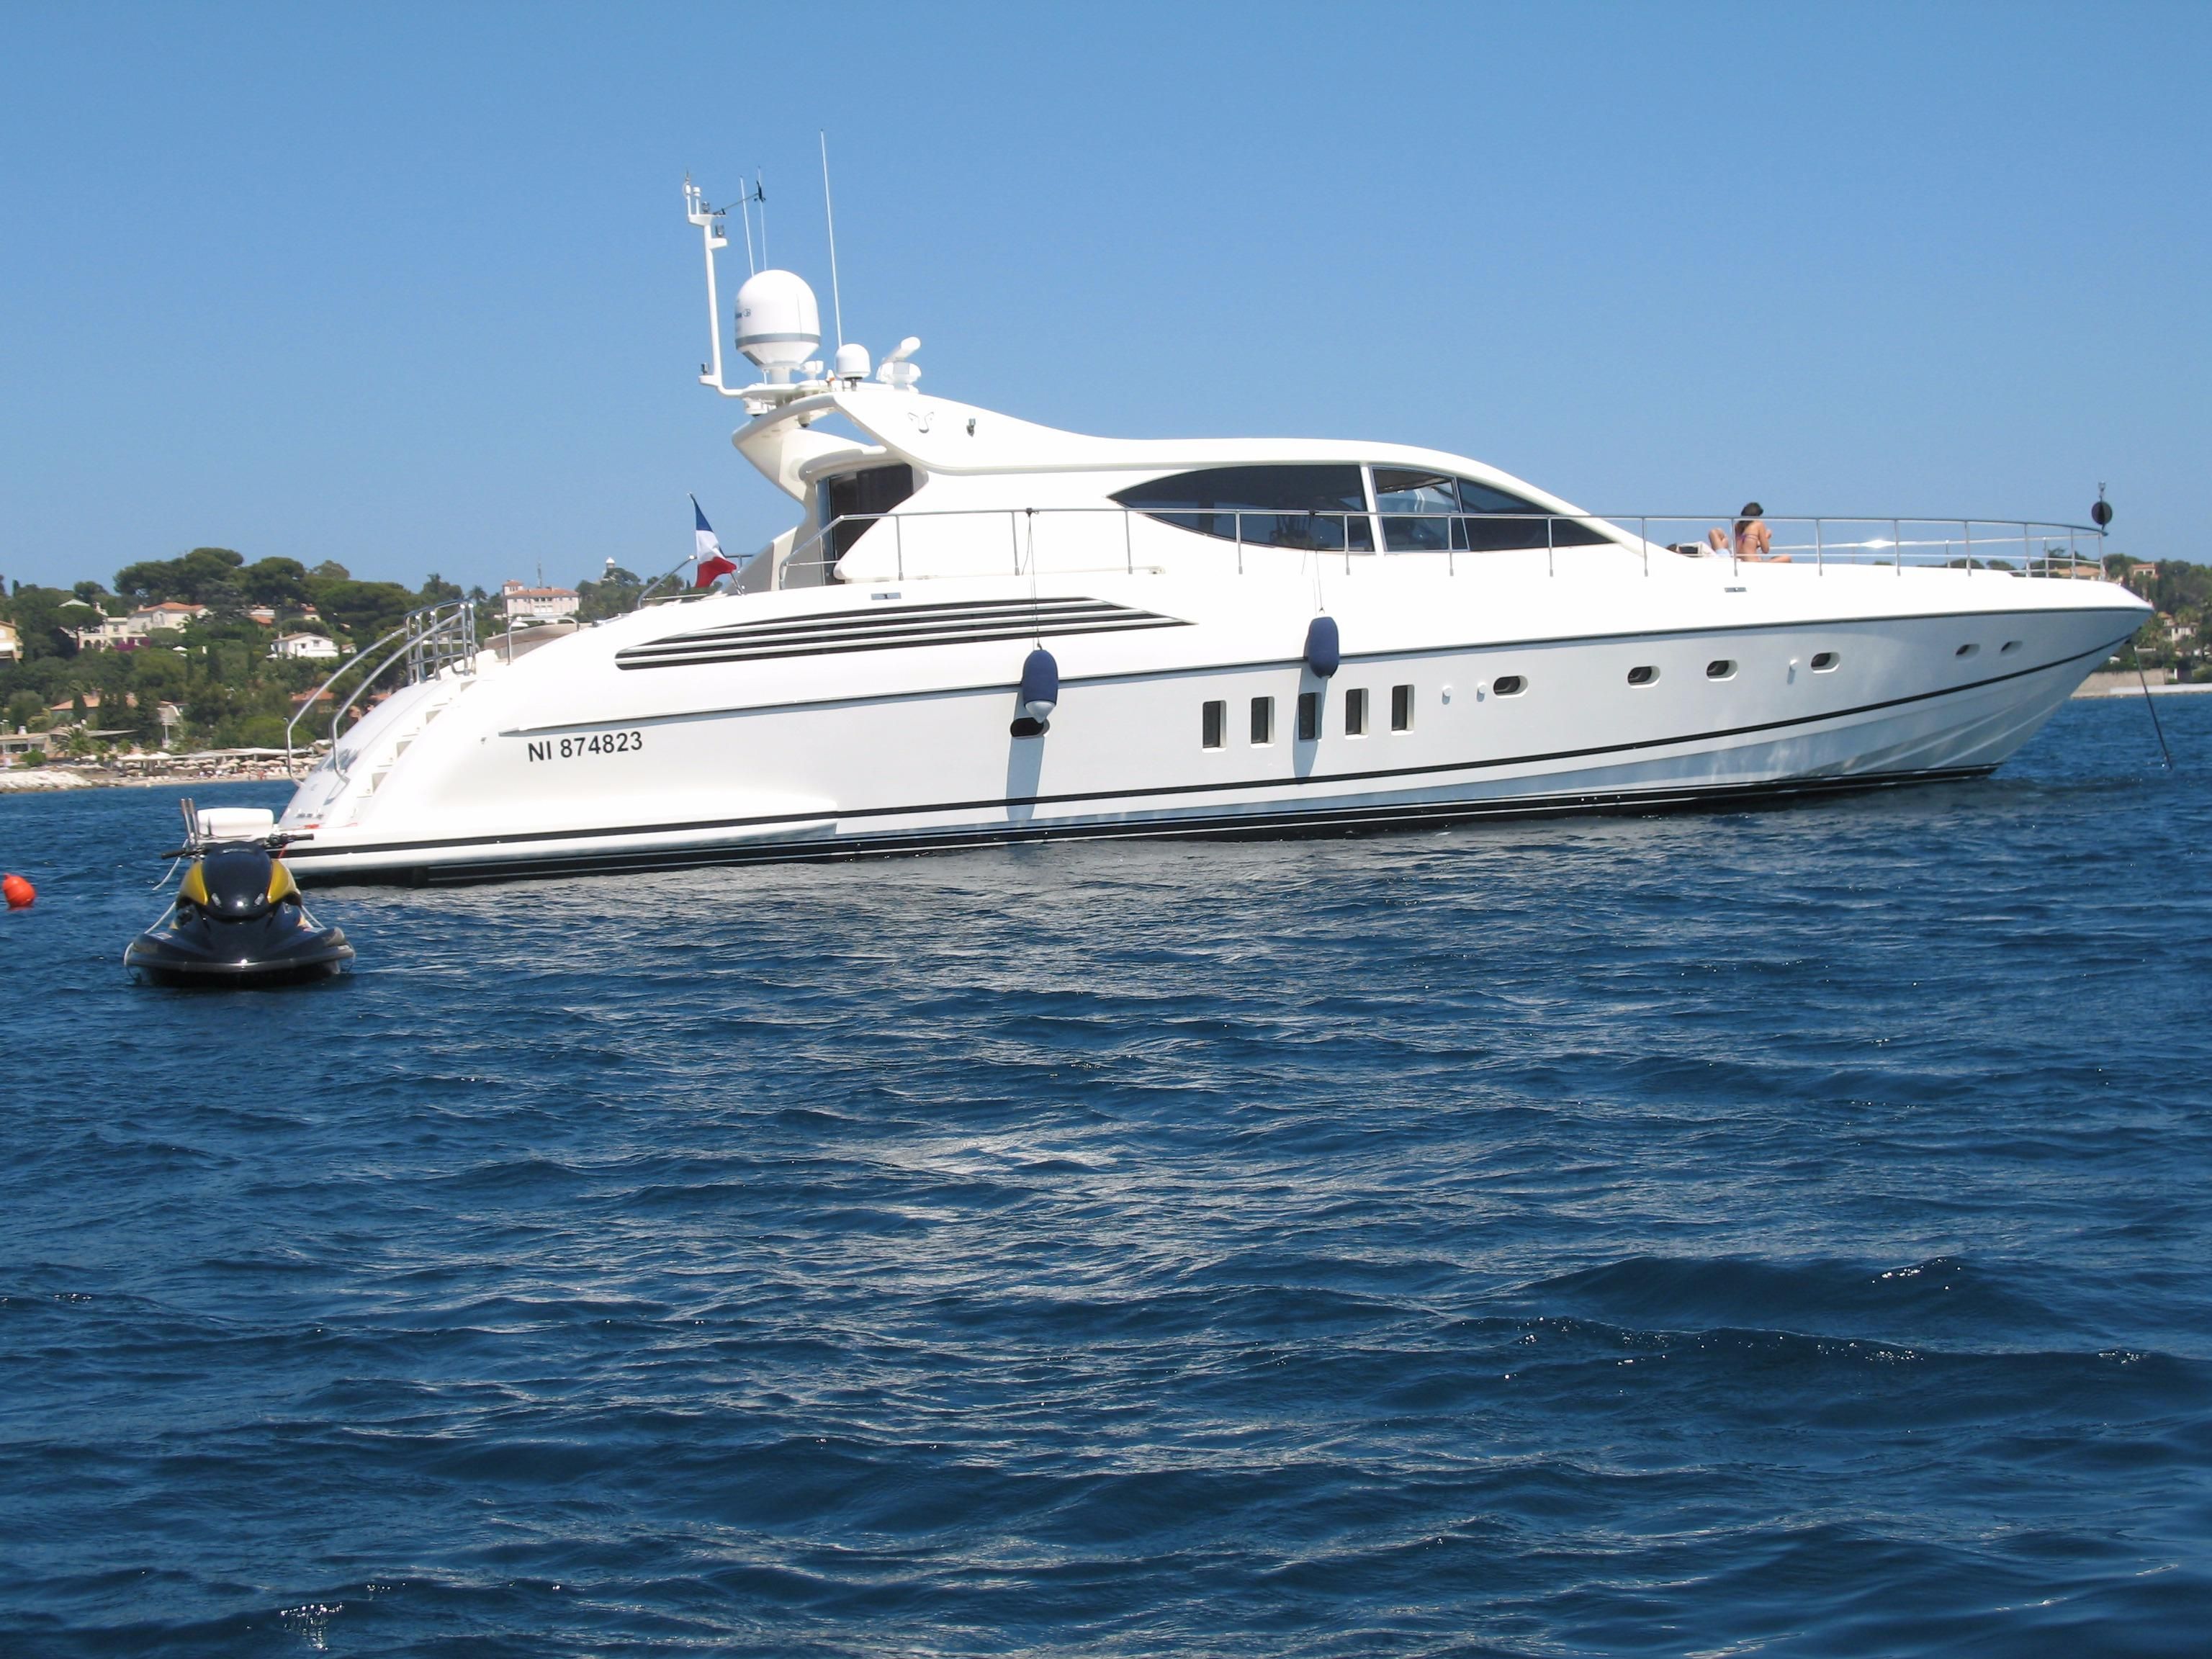 leopard 24m yacht